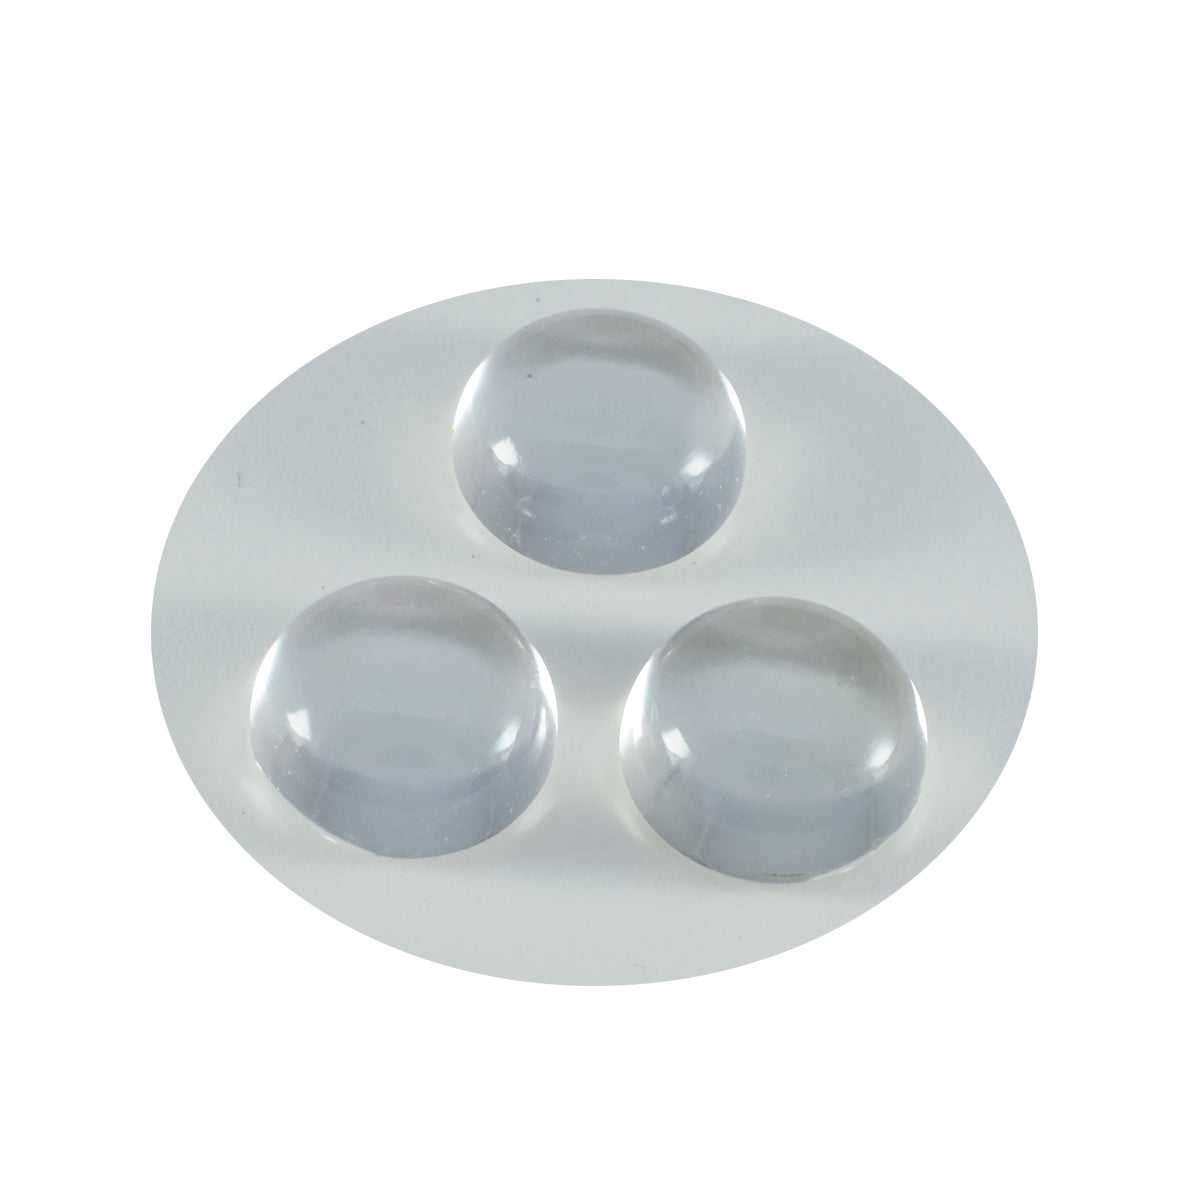 Riyogems – cabochon de quartz en cristal blanc, forme ronde, belle qualité, gemme en vrac, 11x11mm, 1 pièce